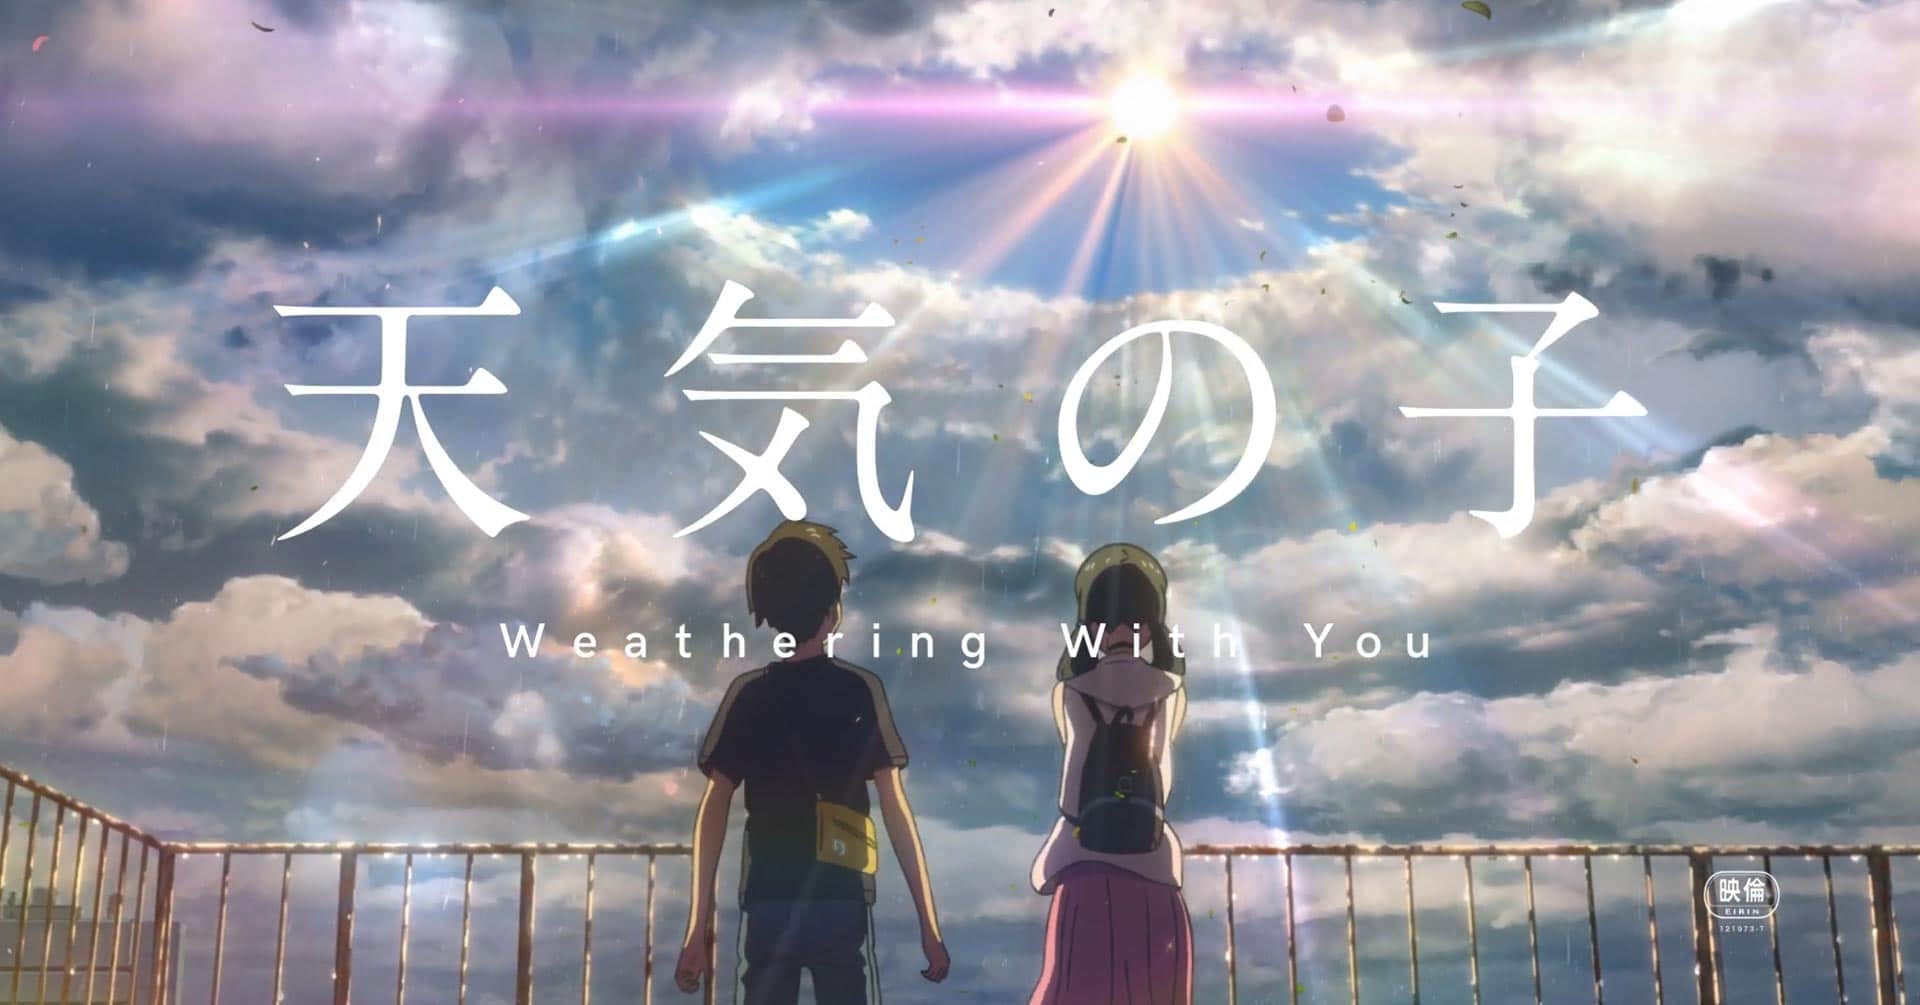 Weathering With You, filme do diretor de Your Name, ganha novo teaser